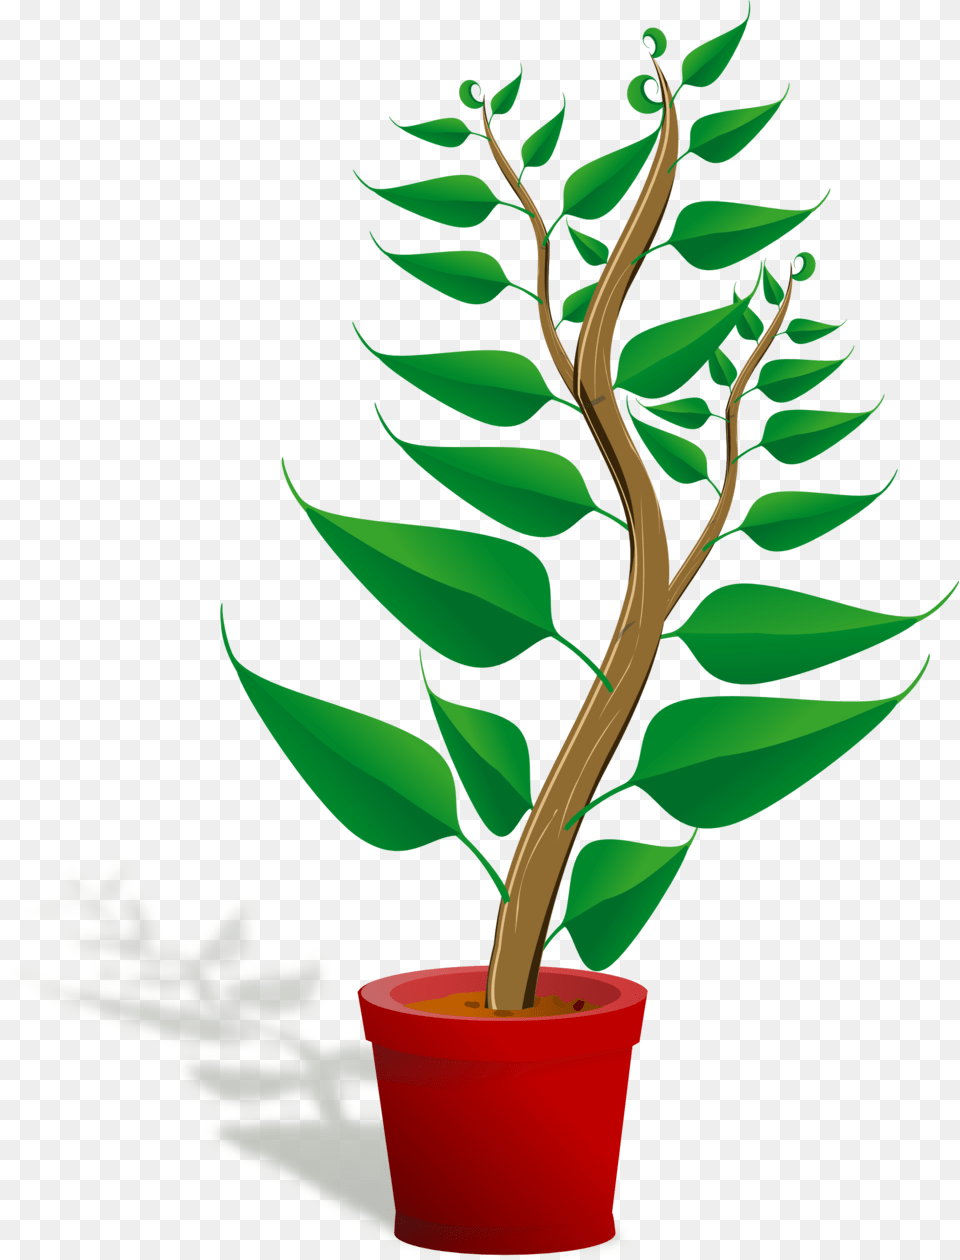 Leaf, Plant, Tree, Flower Png Image